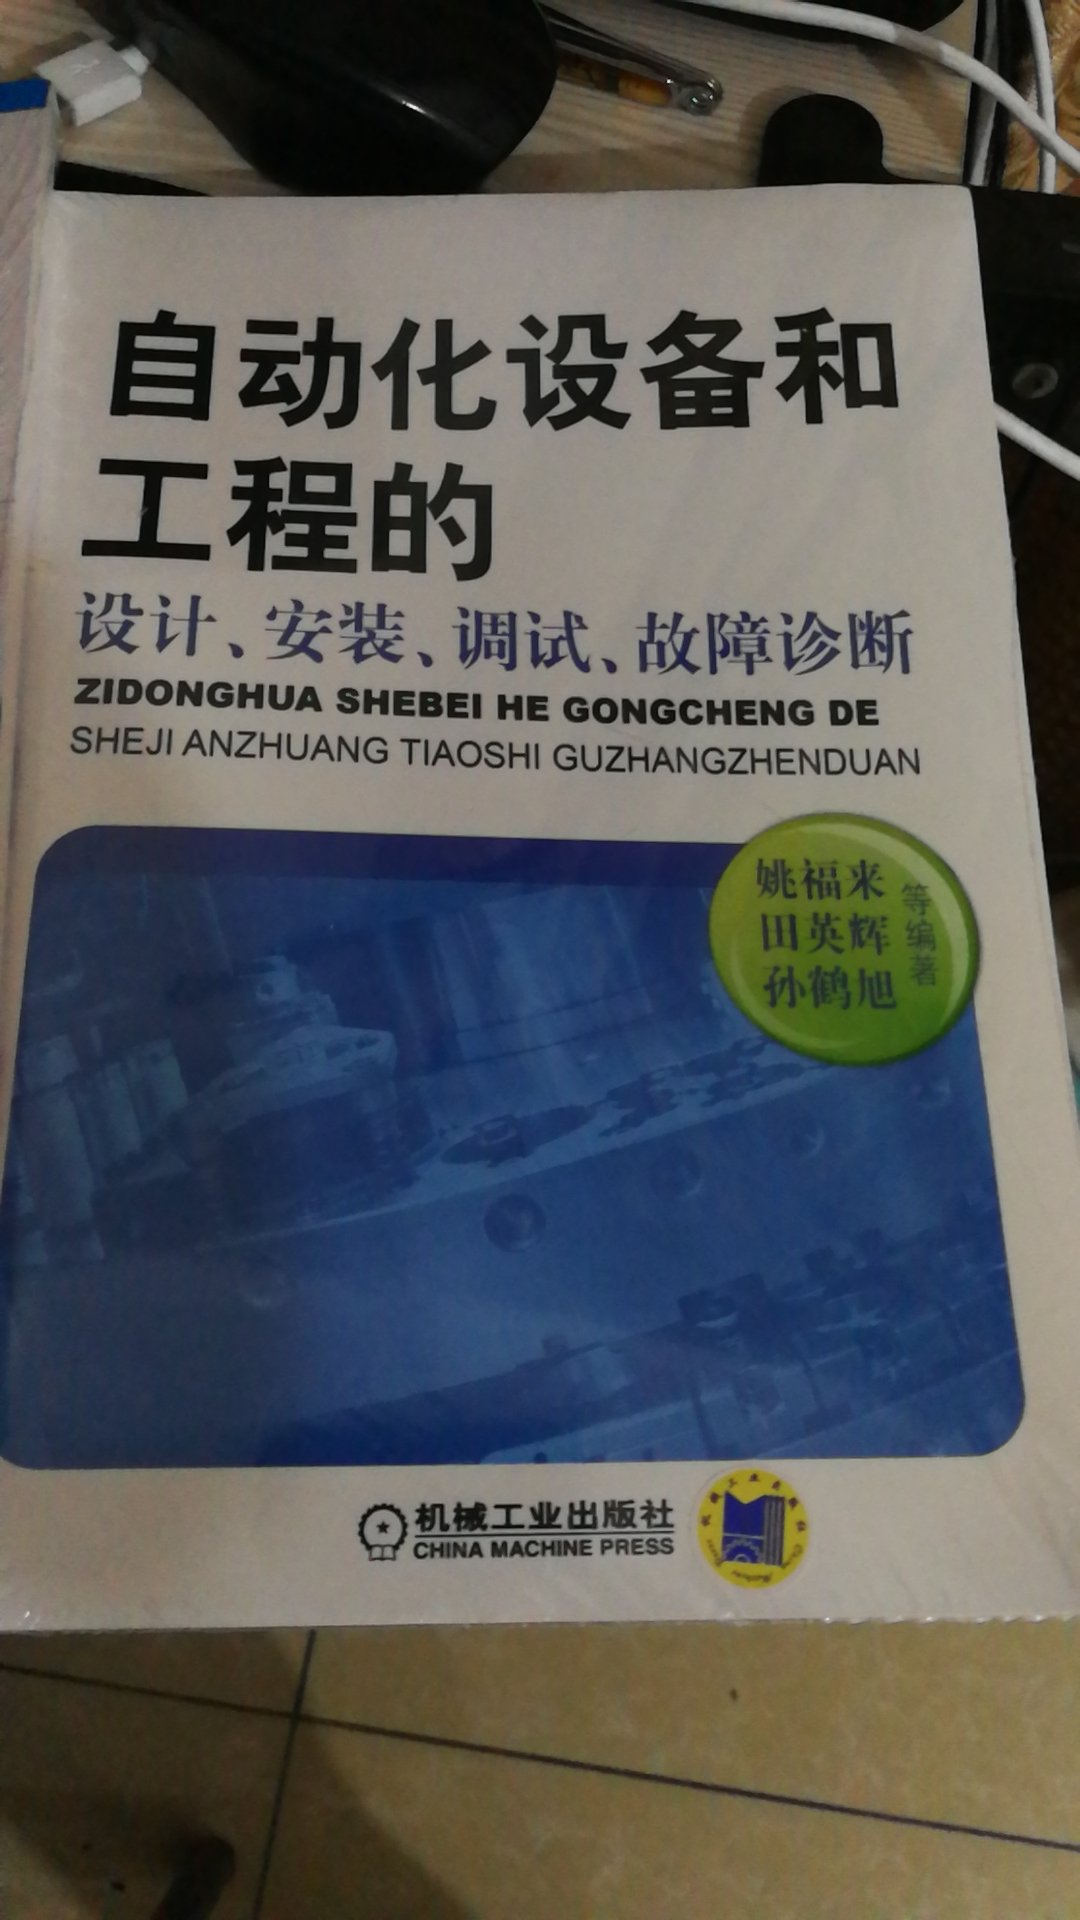 学习船舶电气维修技术。。。